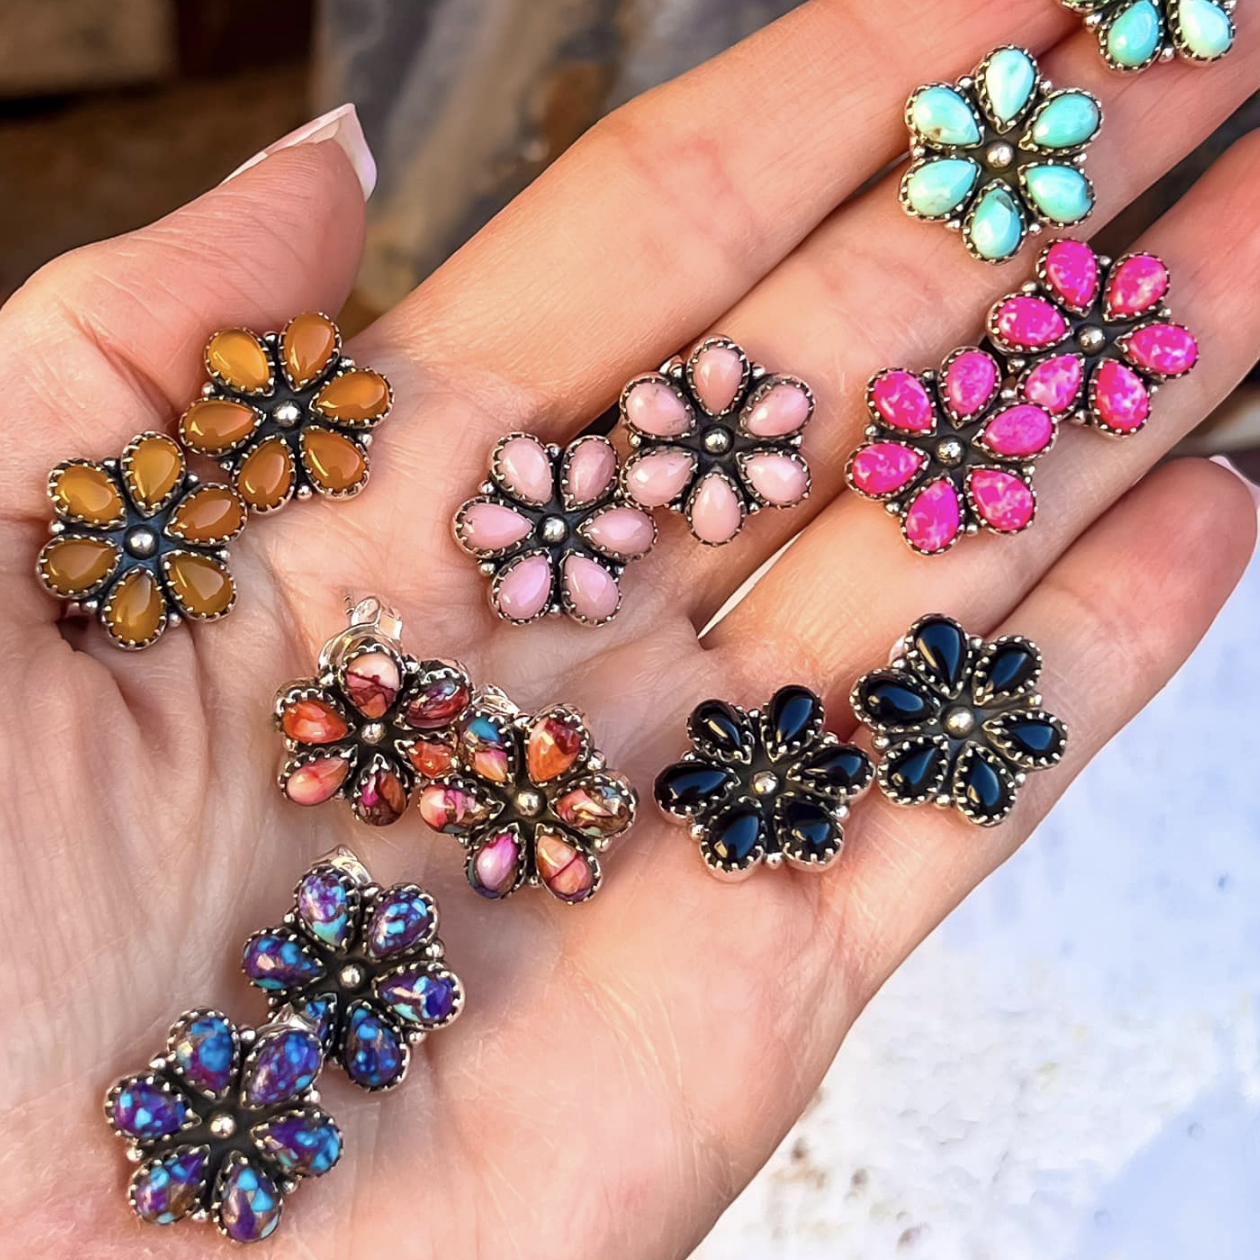 Mini Daisy Earrings | Multiple Stone Options!-Earrings-Krush Kandy, Women's Online Fashion Boutique Located in Phoenix, Arizona (Scottsdale Area)